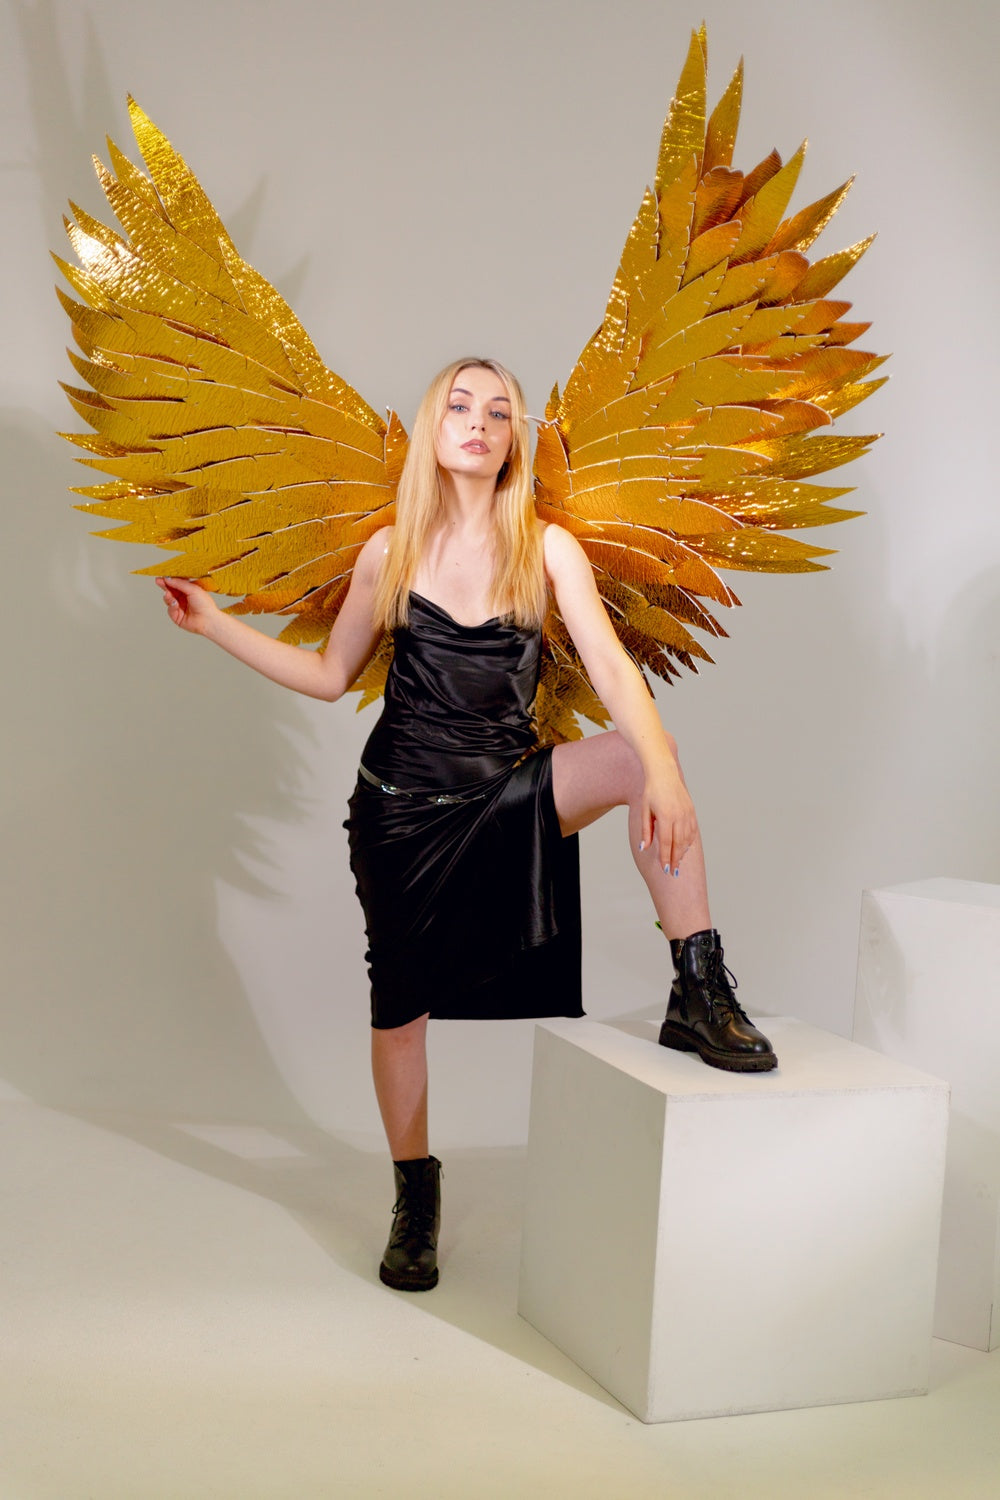 Złote skrzydła anioła do sesji zdjęciowej "marki Bogacci"